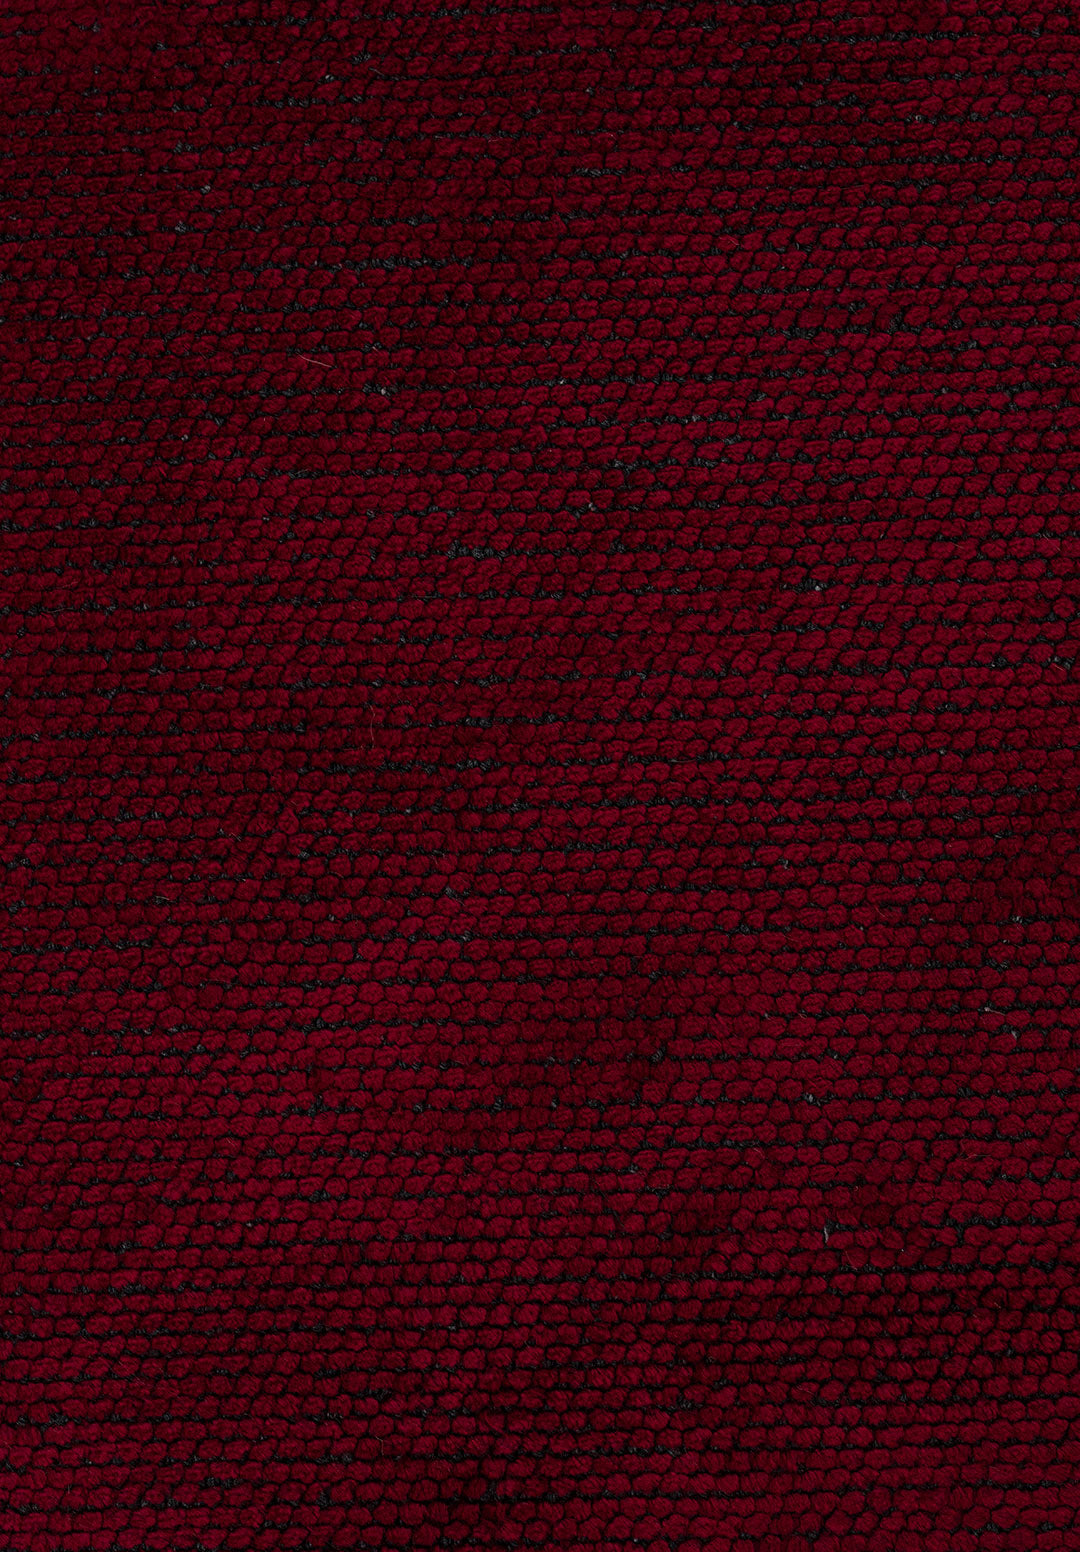 Plain Red Rug Rugs - Venetto Design Venettodesign.com